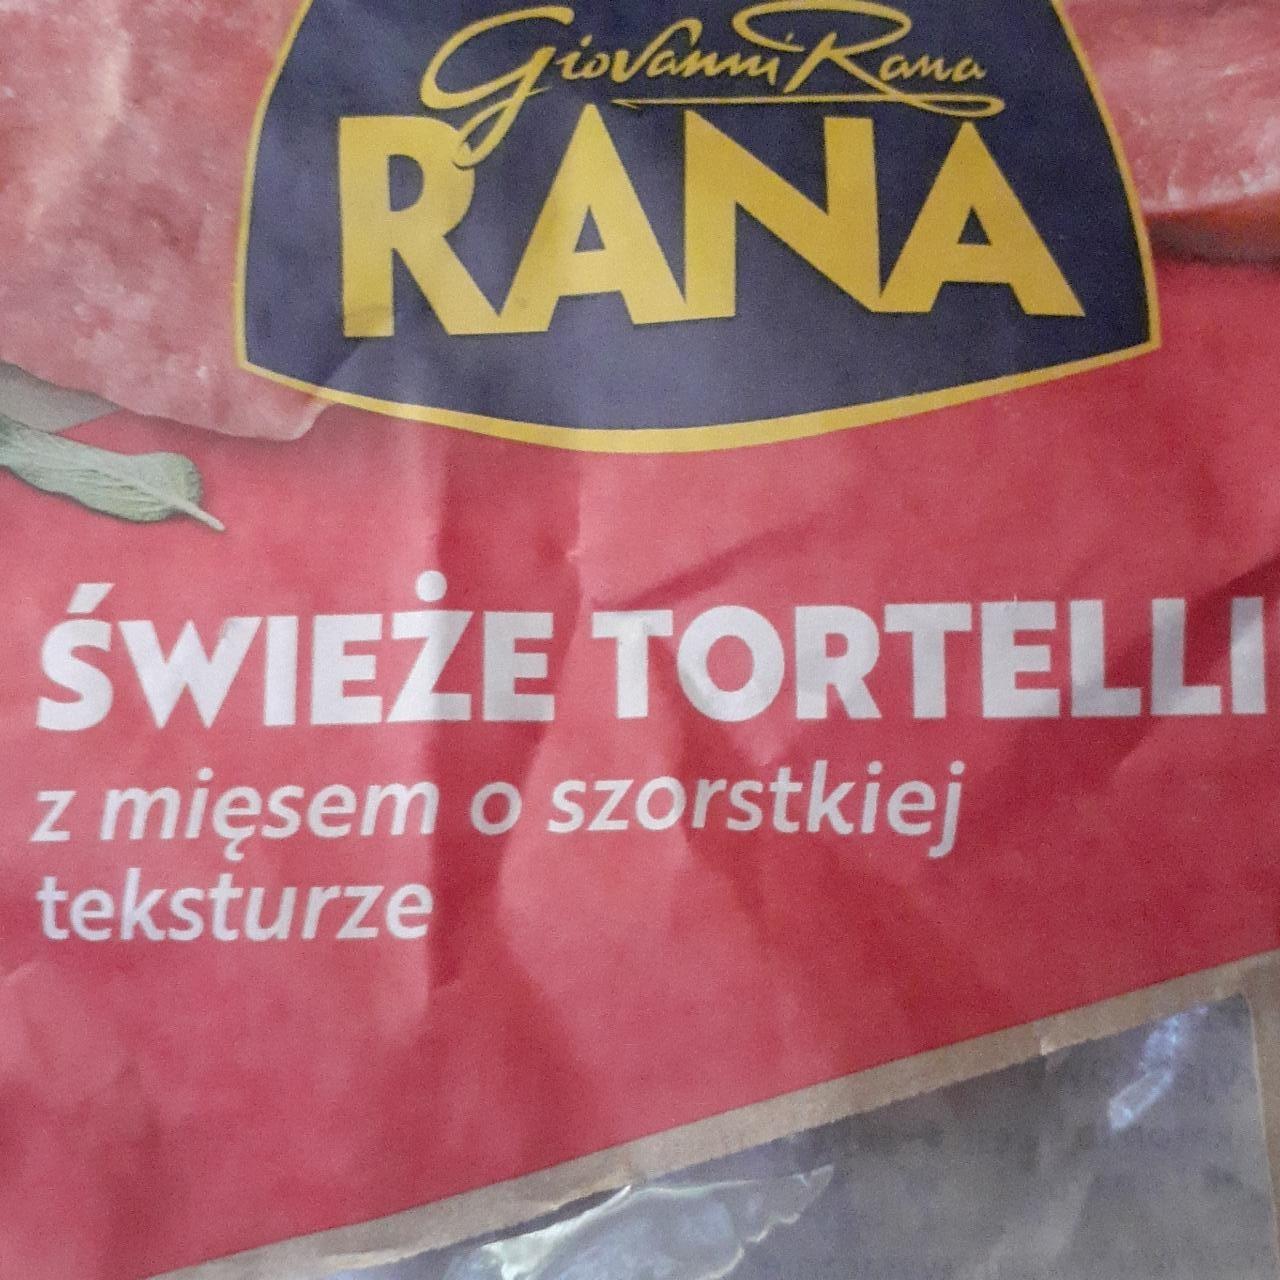 Zdjęcia - tortellini z mięsem o szorstkiej teksturze RANA